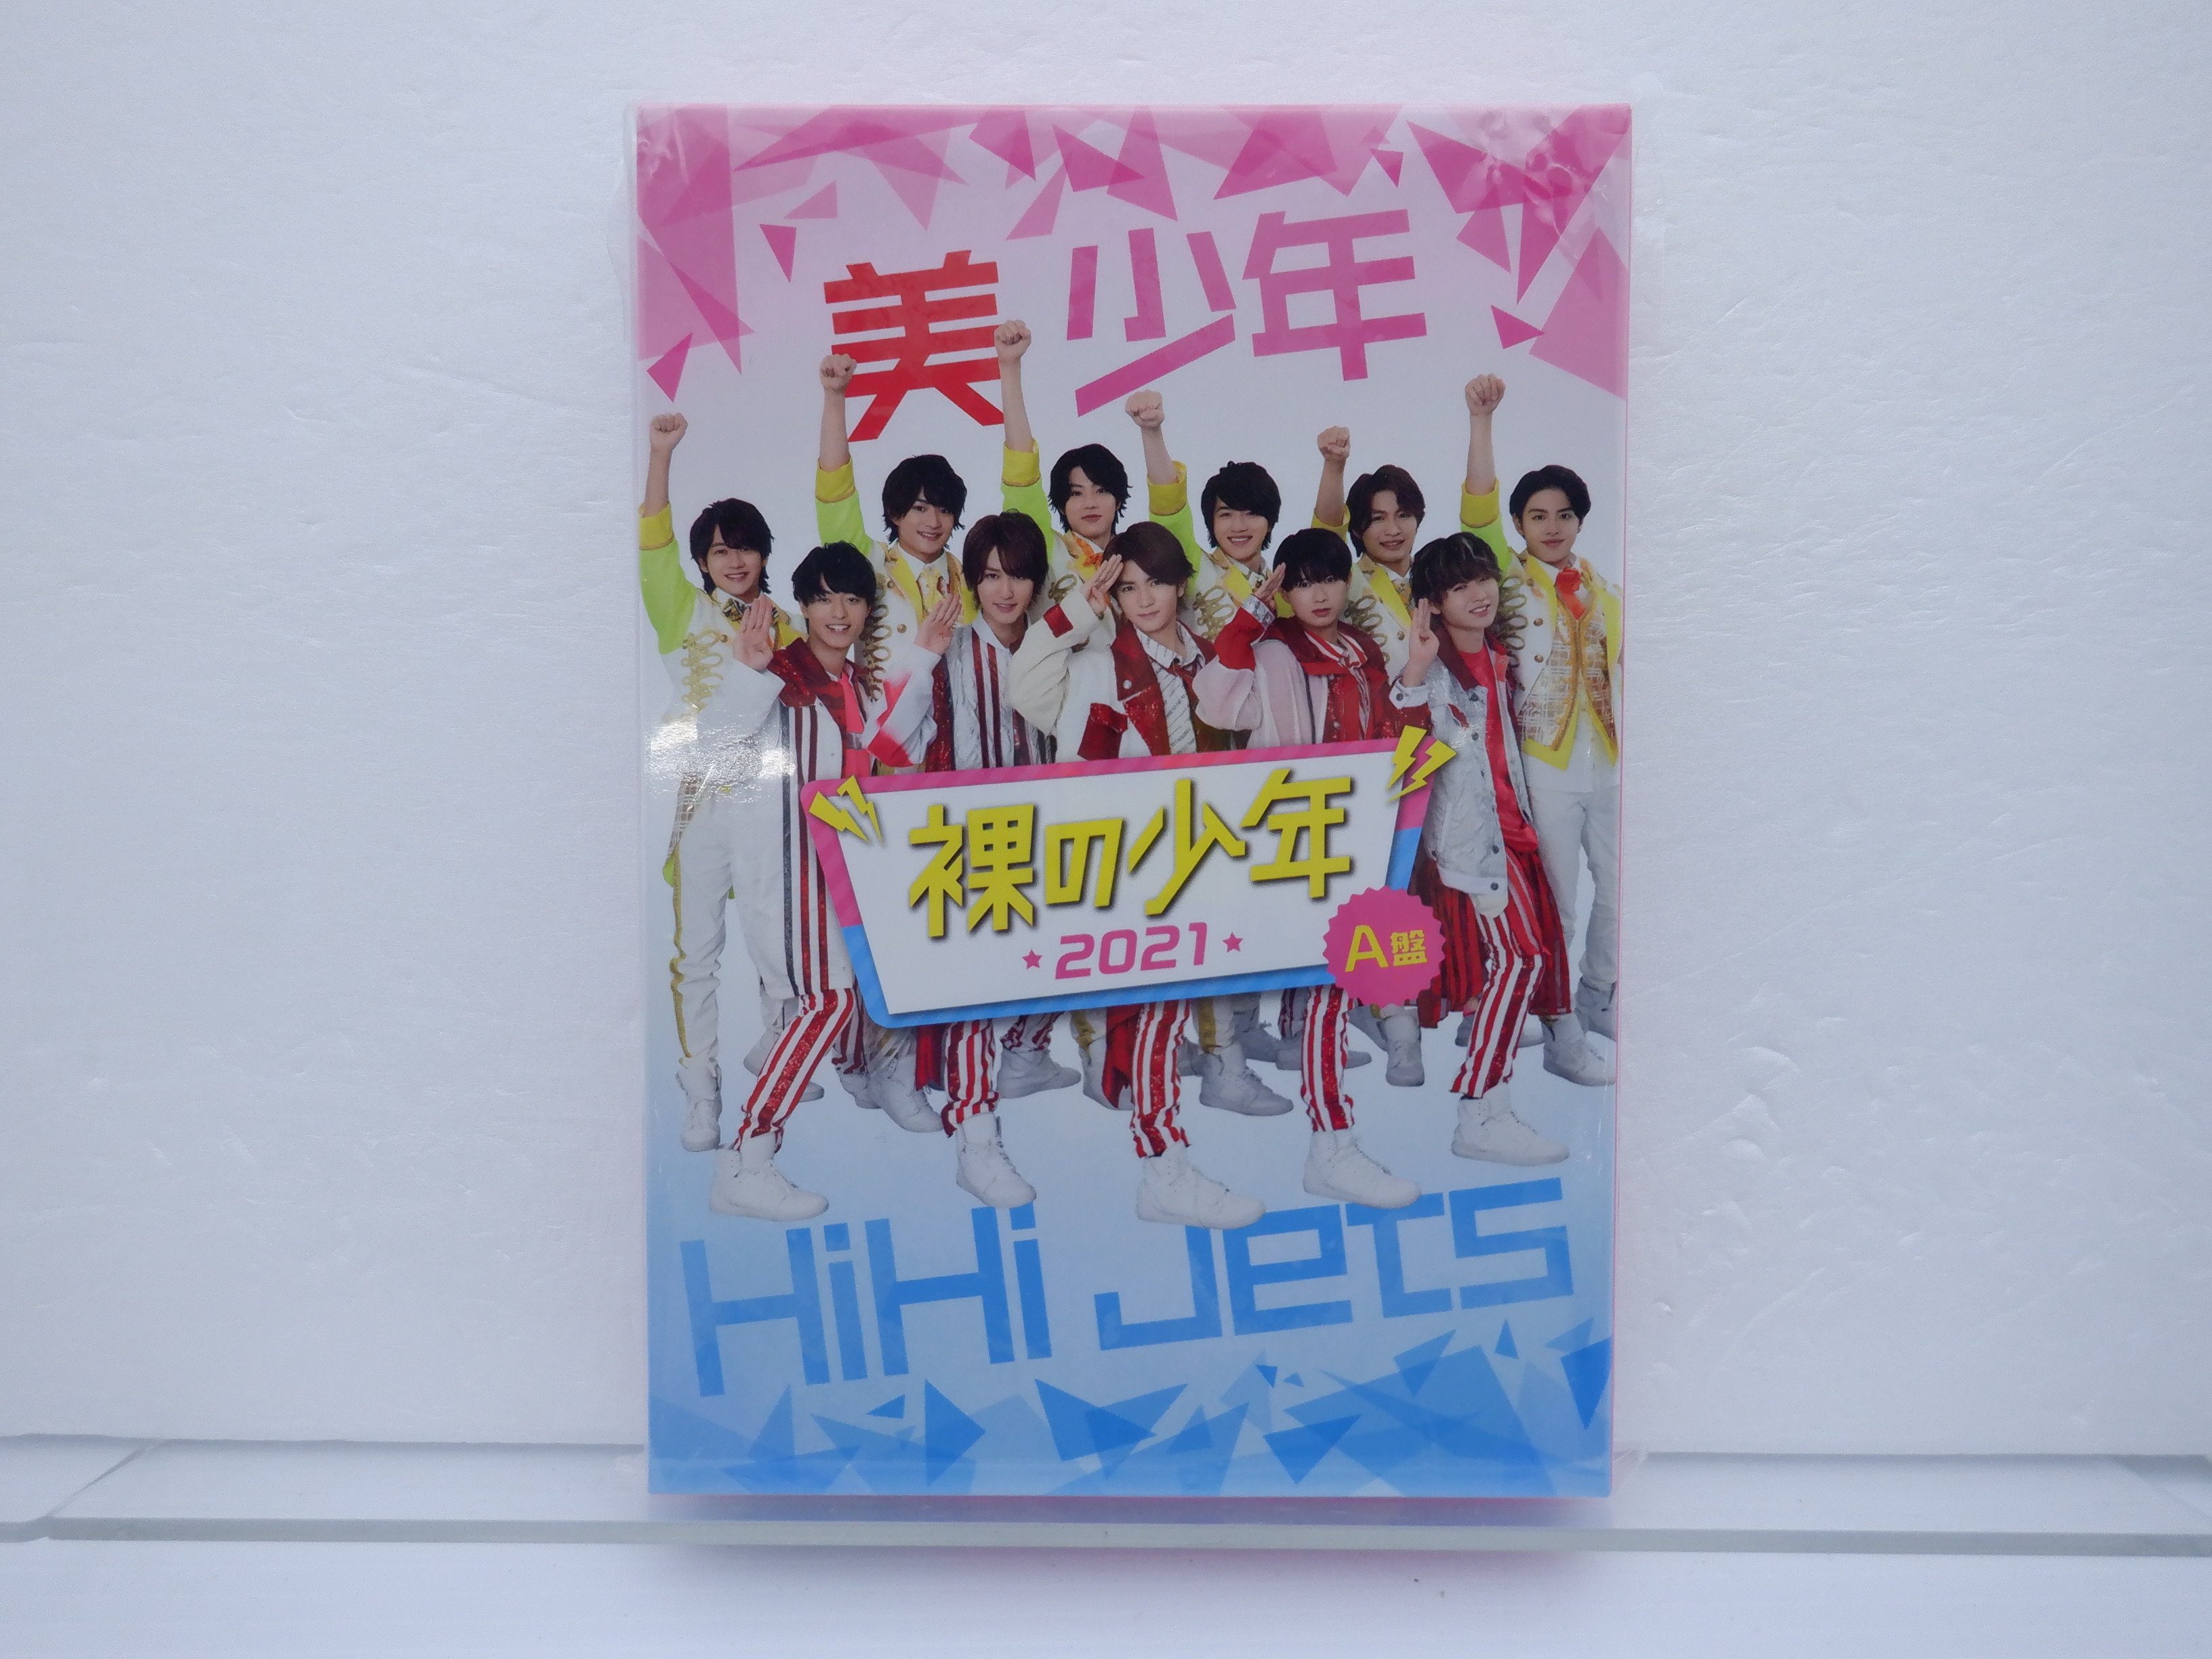 ジャニーズJr. DVD 裸の少年 2021 A盤 2DVD HiHi Jets/美 少年/7 MEN